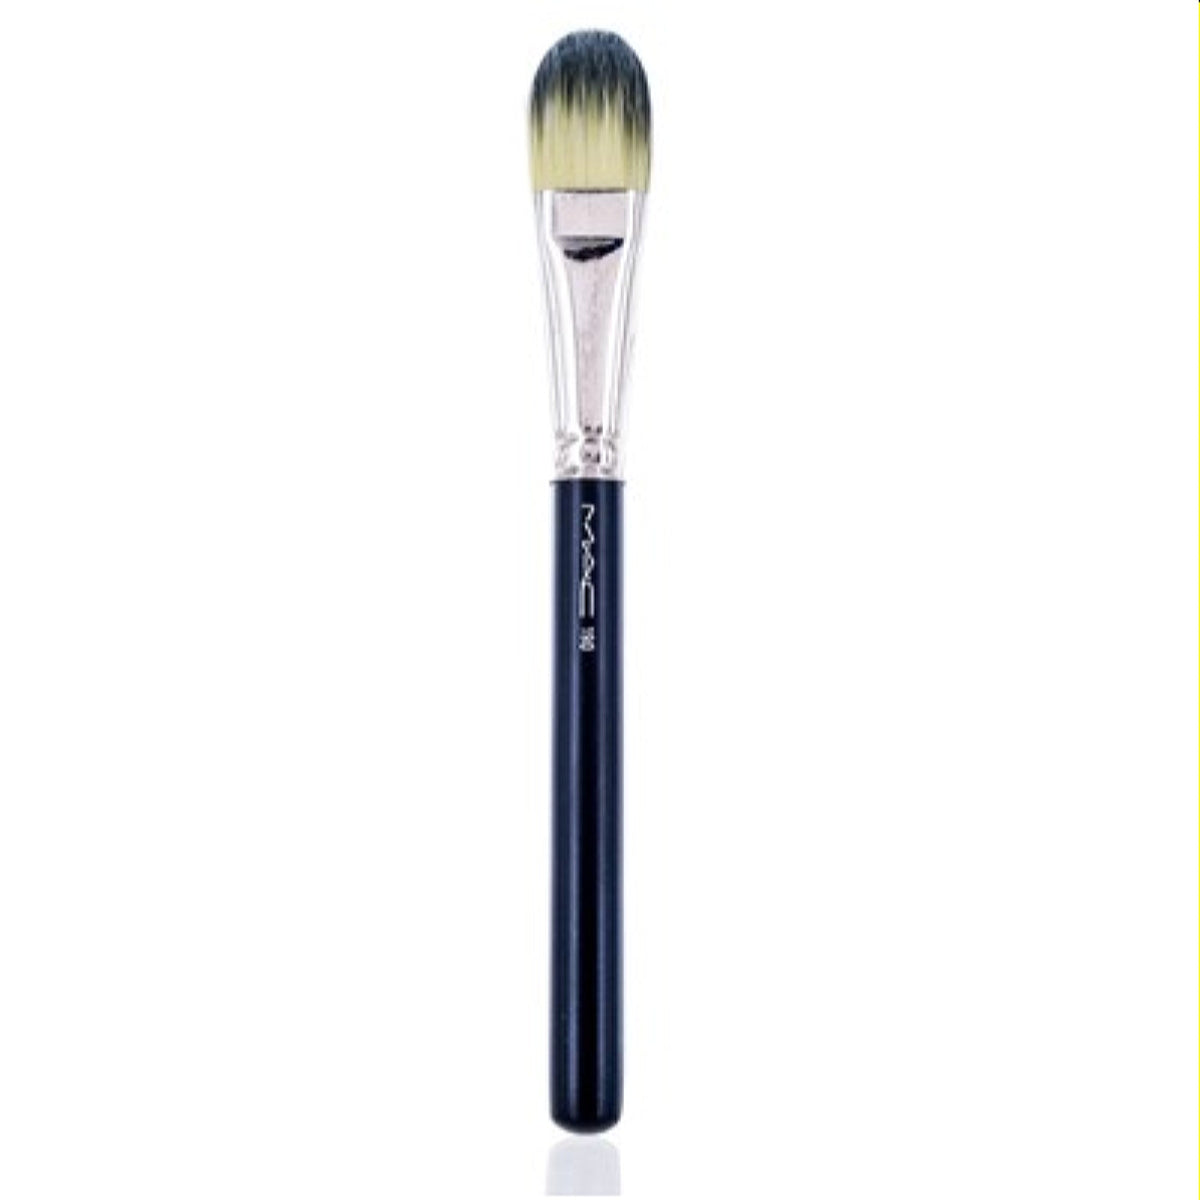 Mac Cosmetics 190 Foundation Brush .64 Oz (19 Ml)  